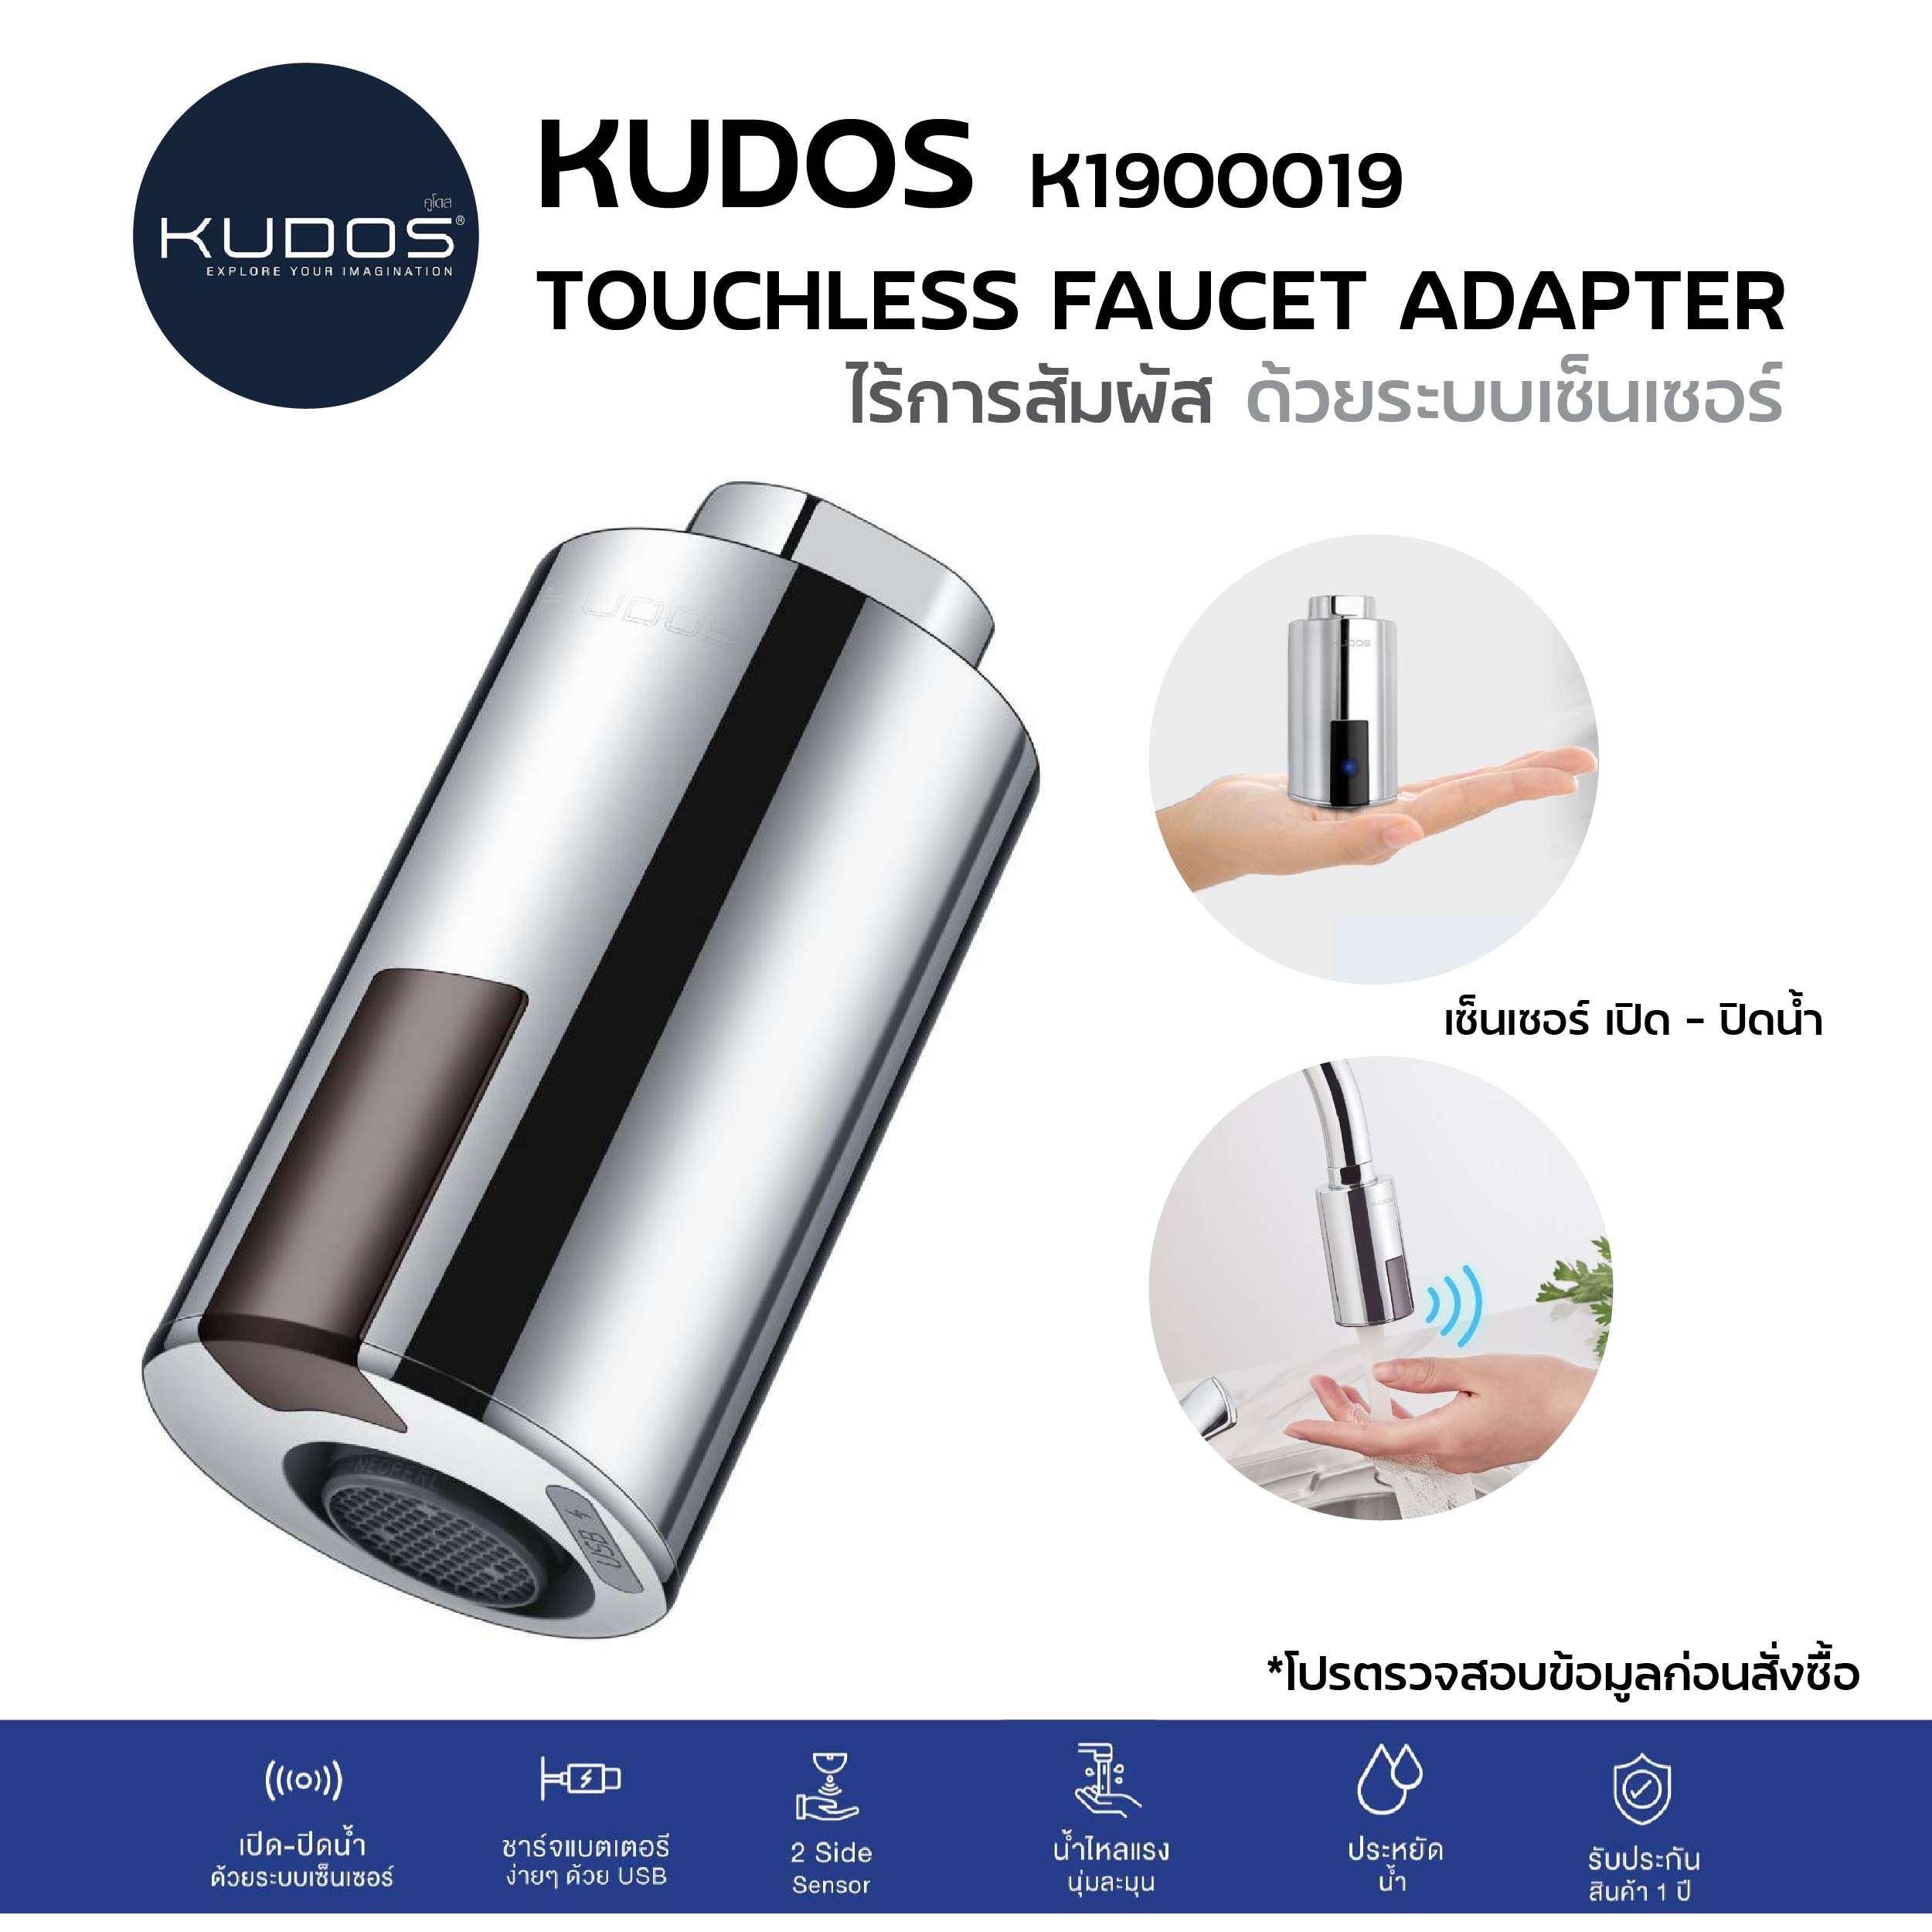 K1900019 ปากก๊อกเซ็นเซอร์ ก๊อกอ่างล้างจาน ก๊อกอ่างล้างหน้า ก๊อกน้ำ ก๊อกไร้การสัมผัส ก๊อกอัจฉริยะ Smart Faucet/ KUDOS